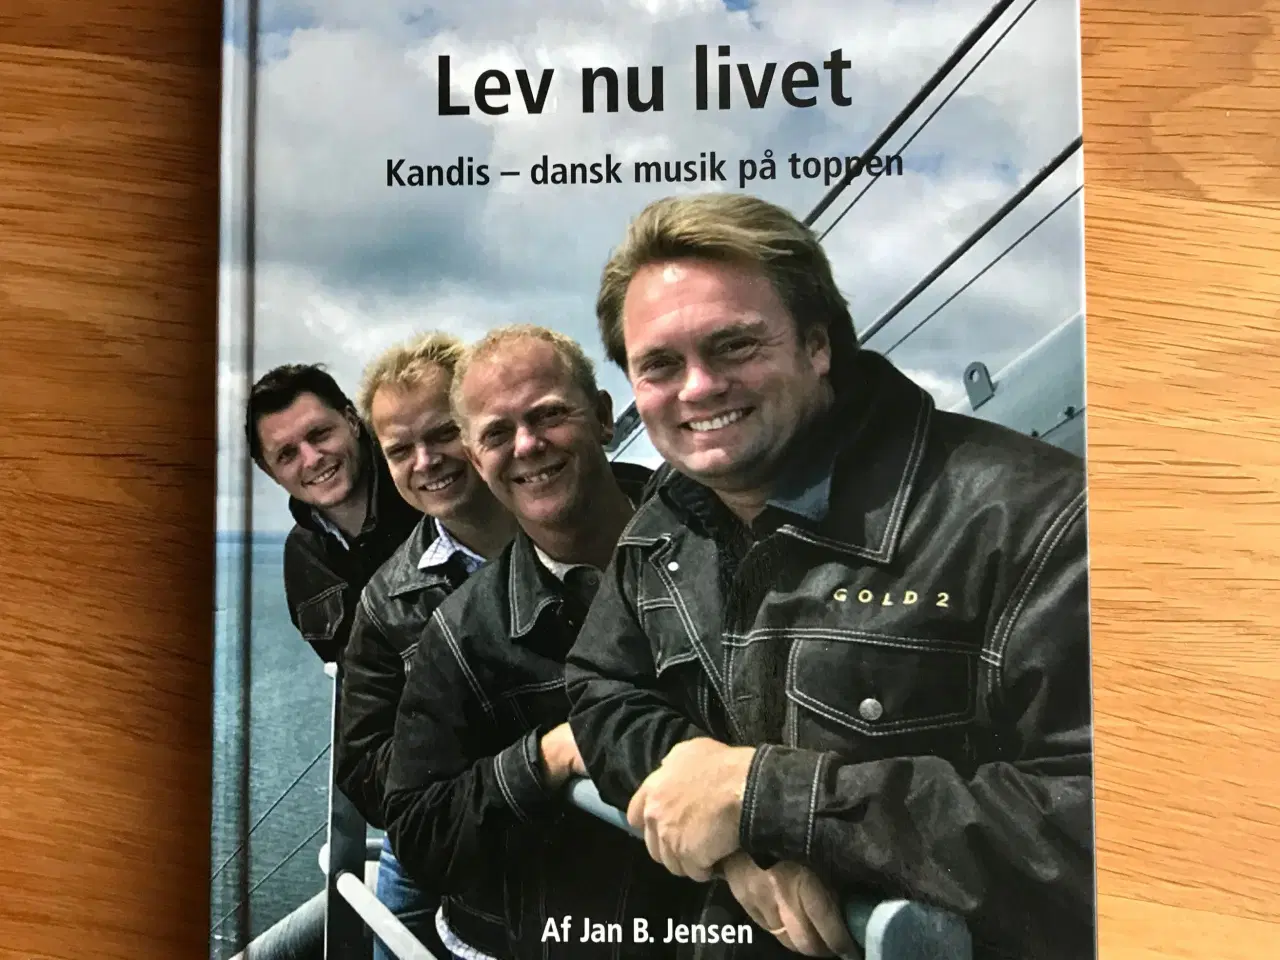 Billede 1 - Kandis - Lev nu livet  - dansk musik på toppen